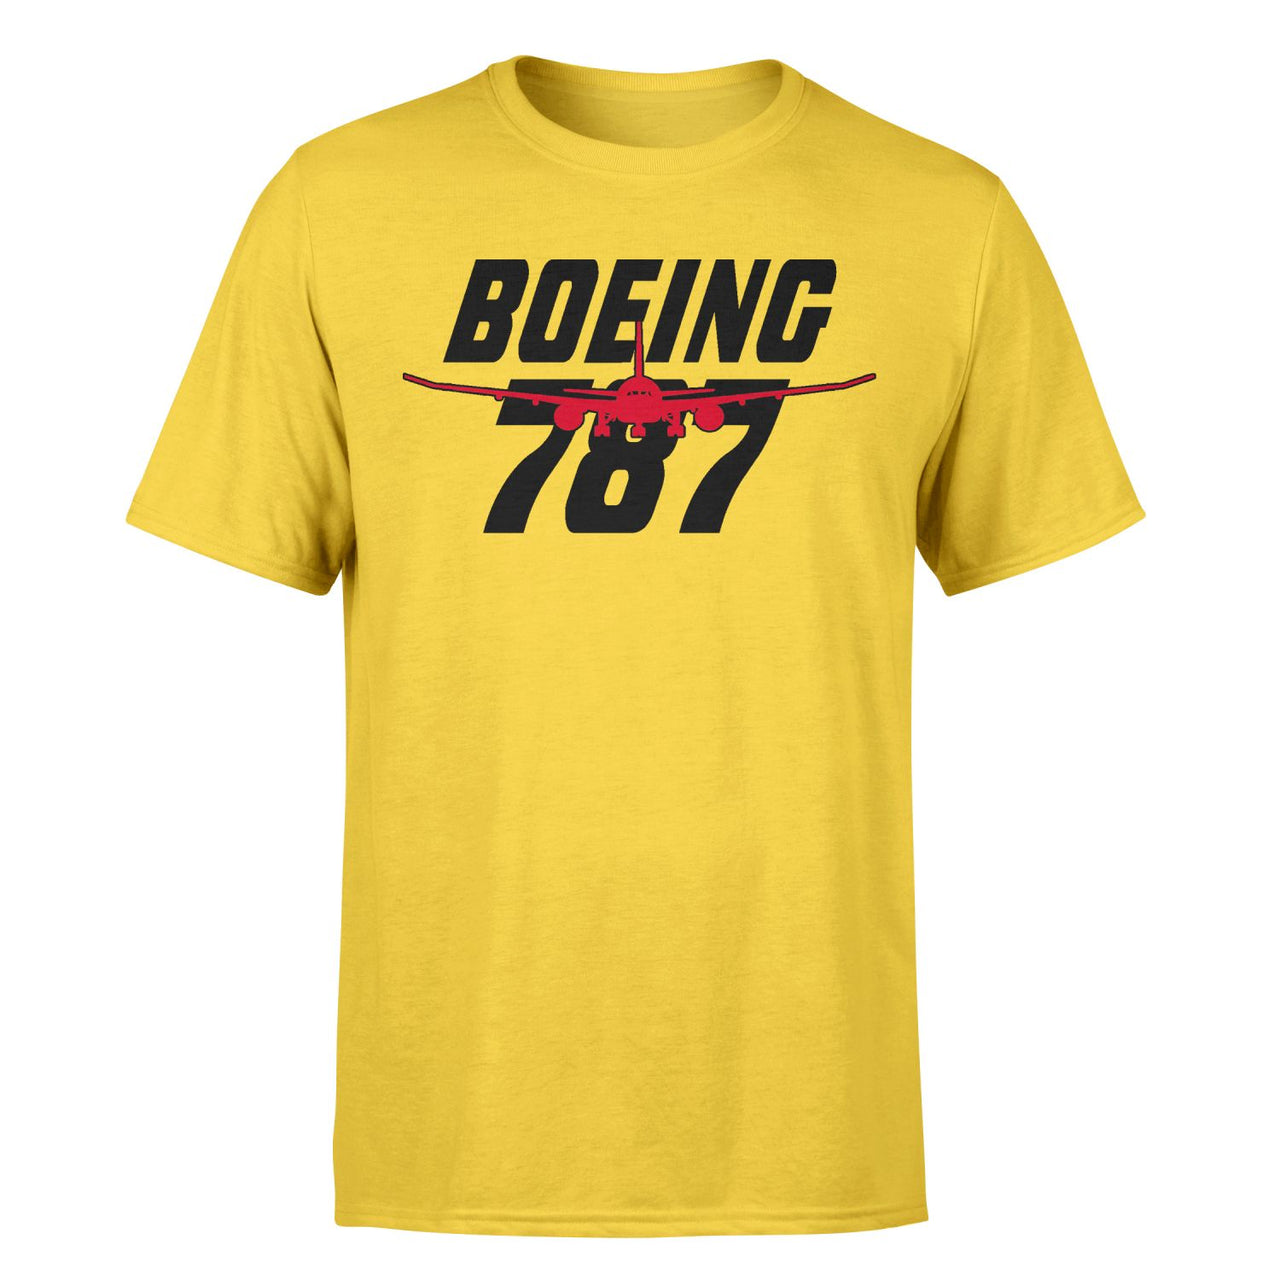 Amazing Boeing 787 Designed T-Shirts